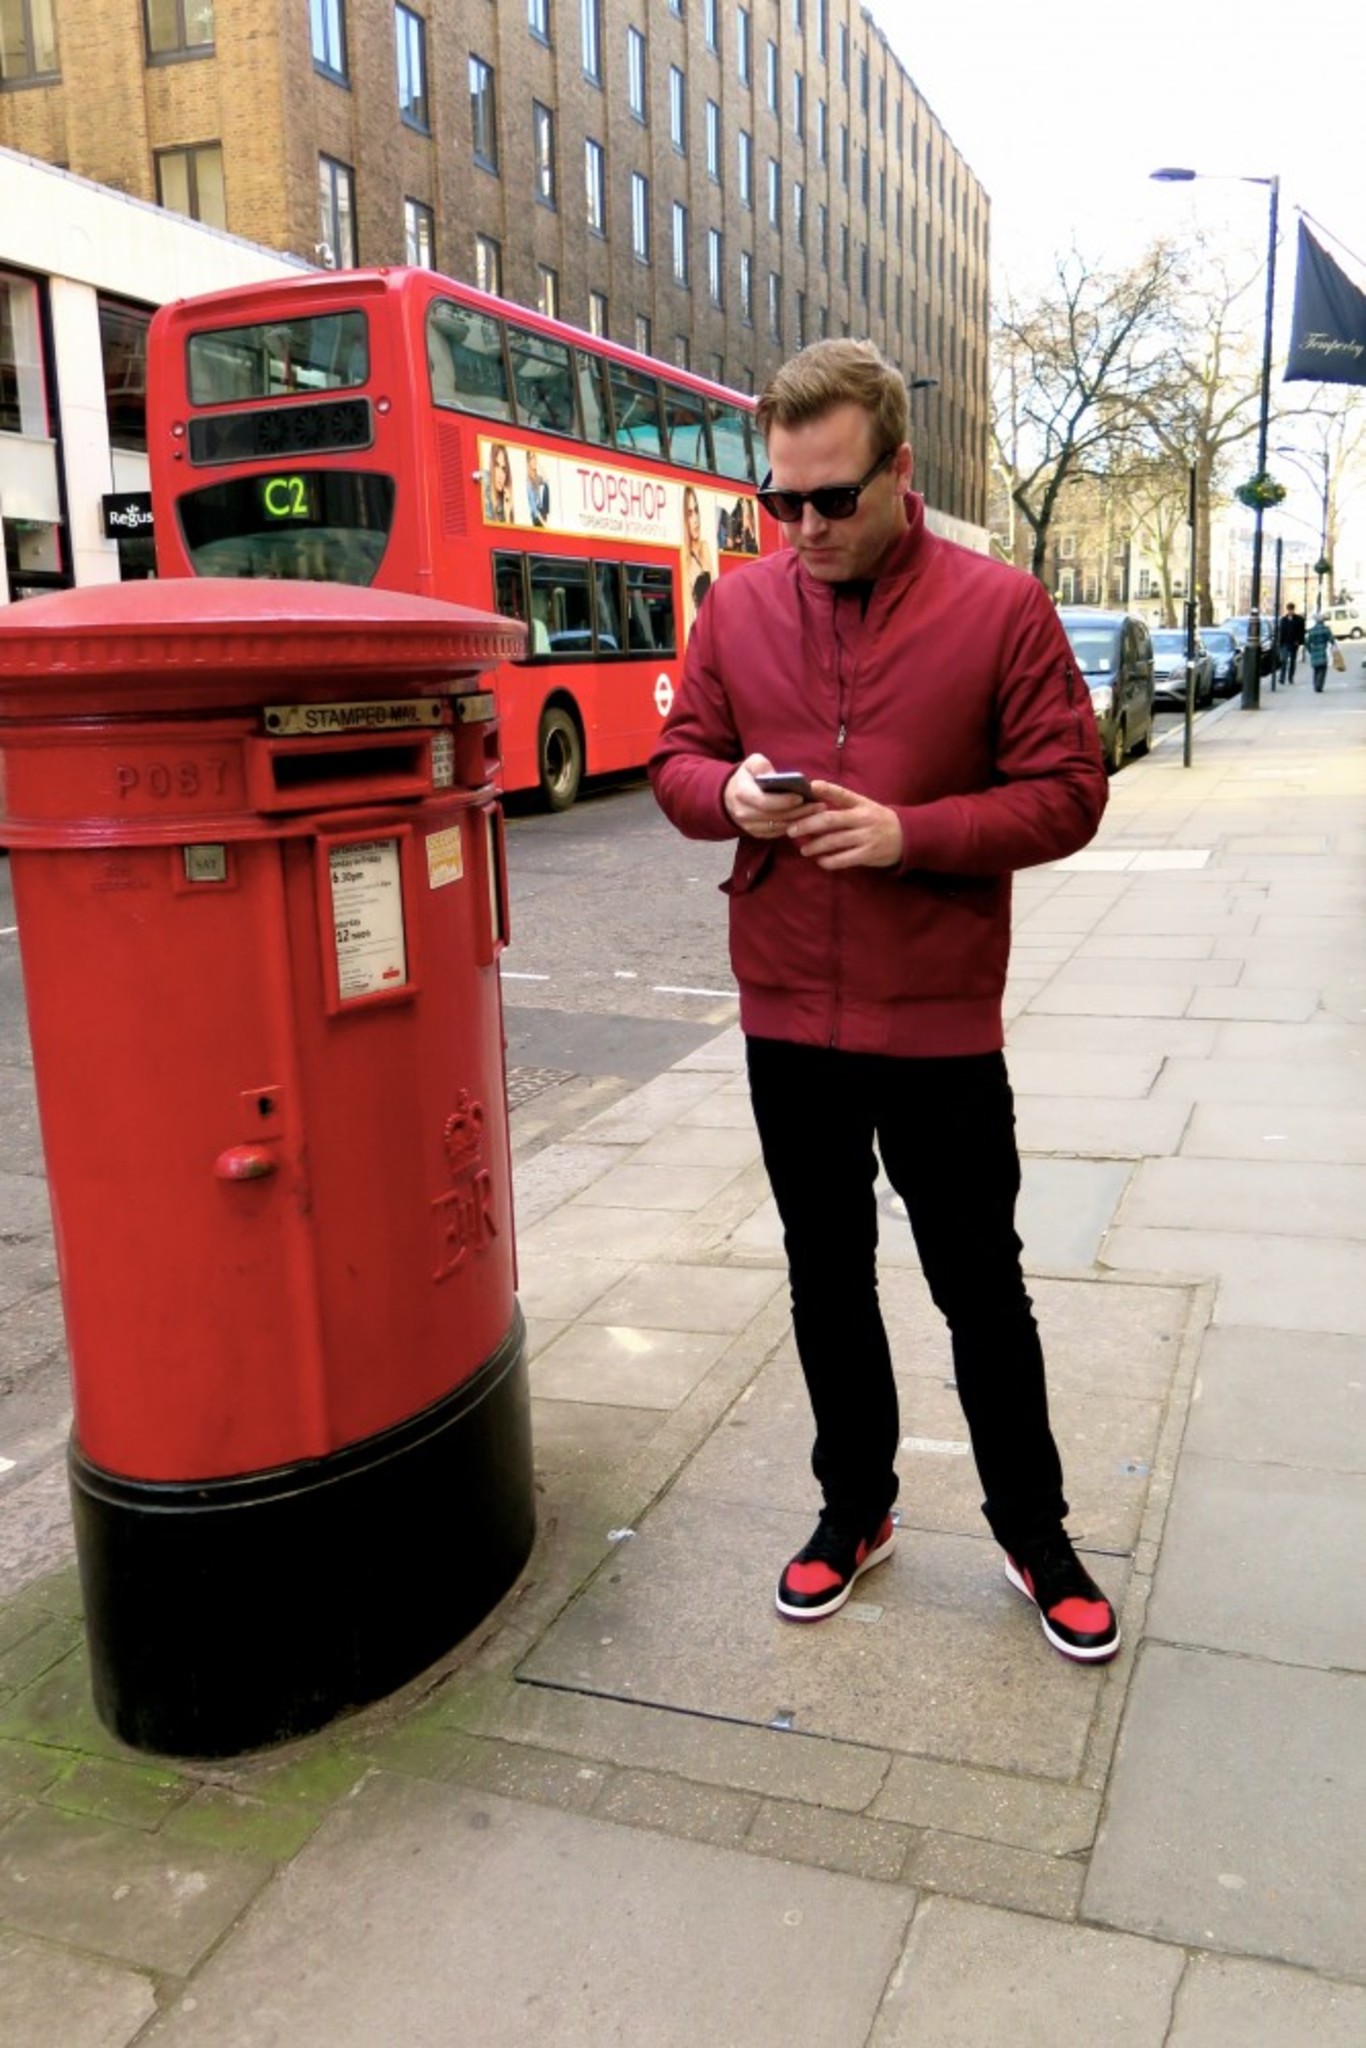 When in London - Wear Red!